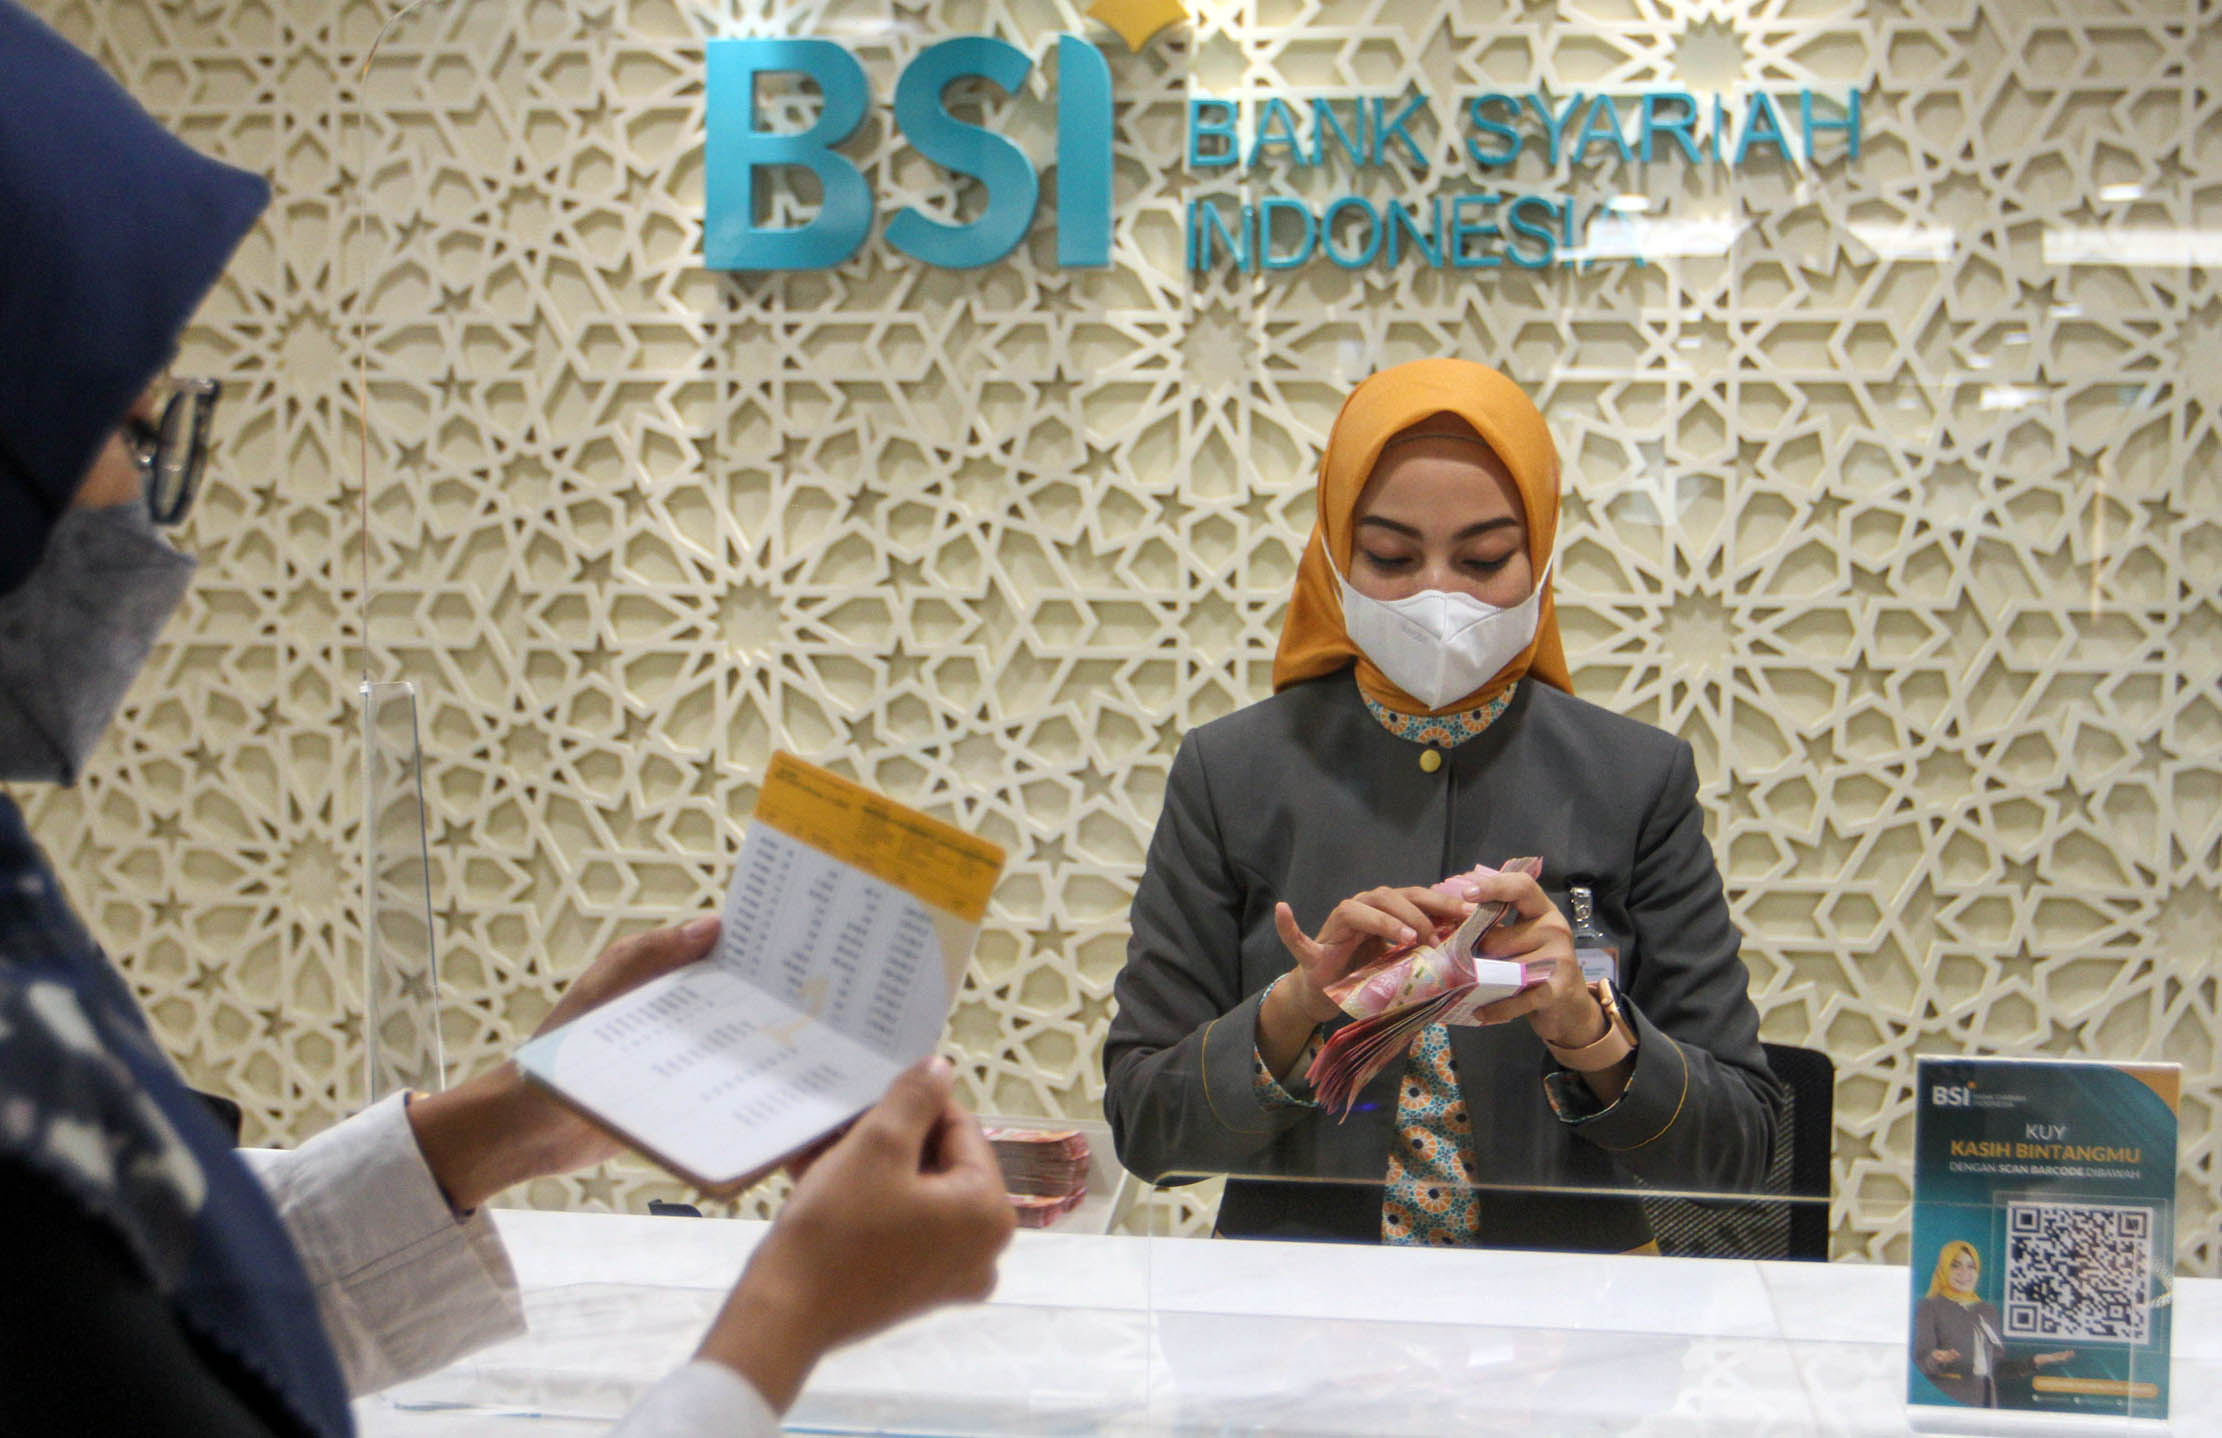 Aktifitas pelayanan perbankan di salah satu cabang BSI kawasan Gatot Subroto, Jakarta. Foto : Panji Asmoro/TrenAsia